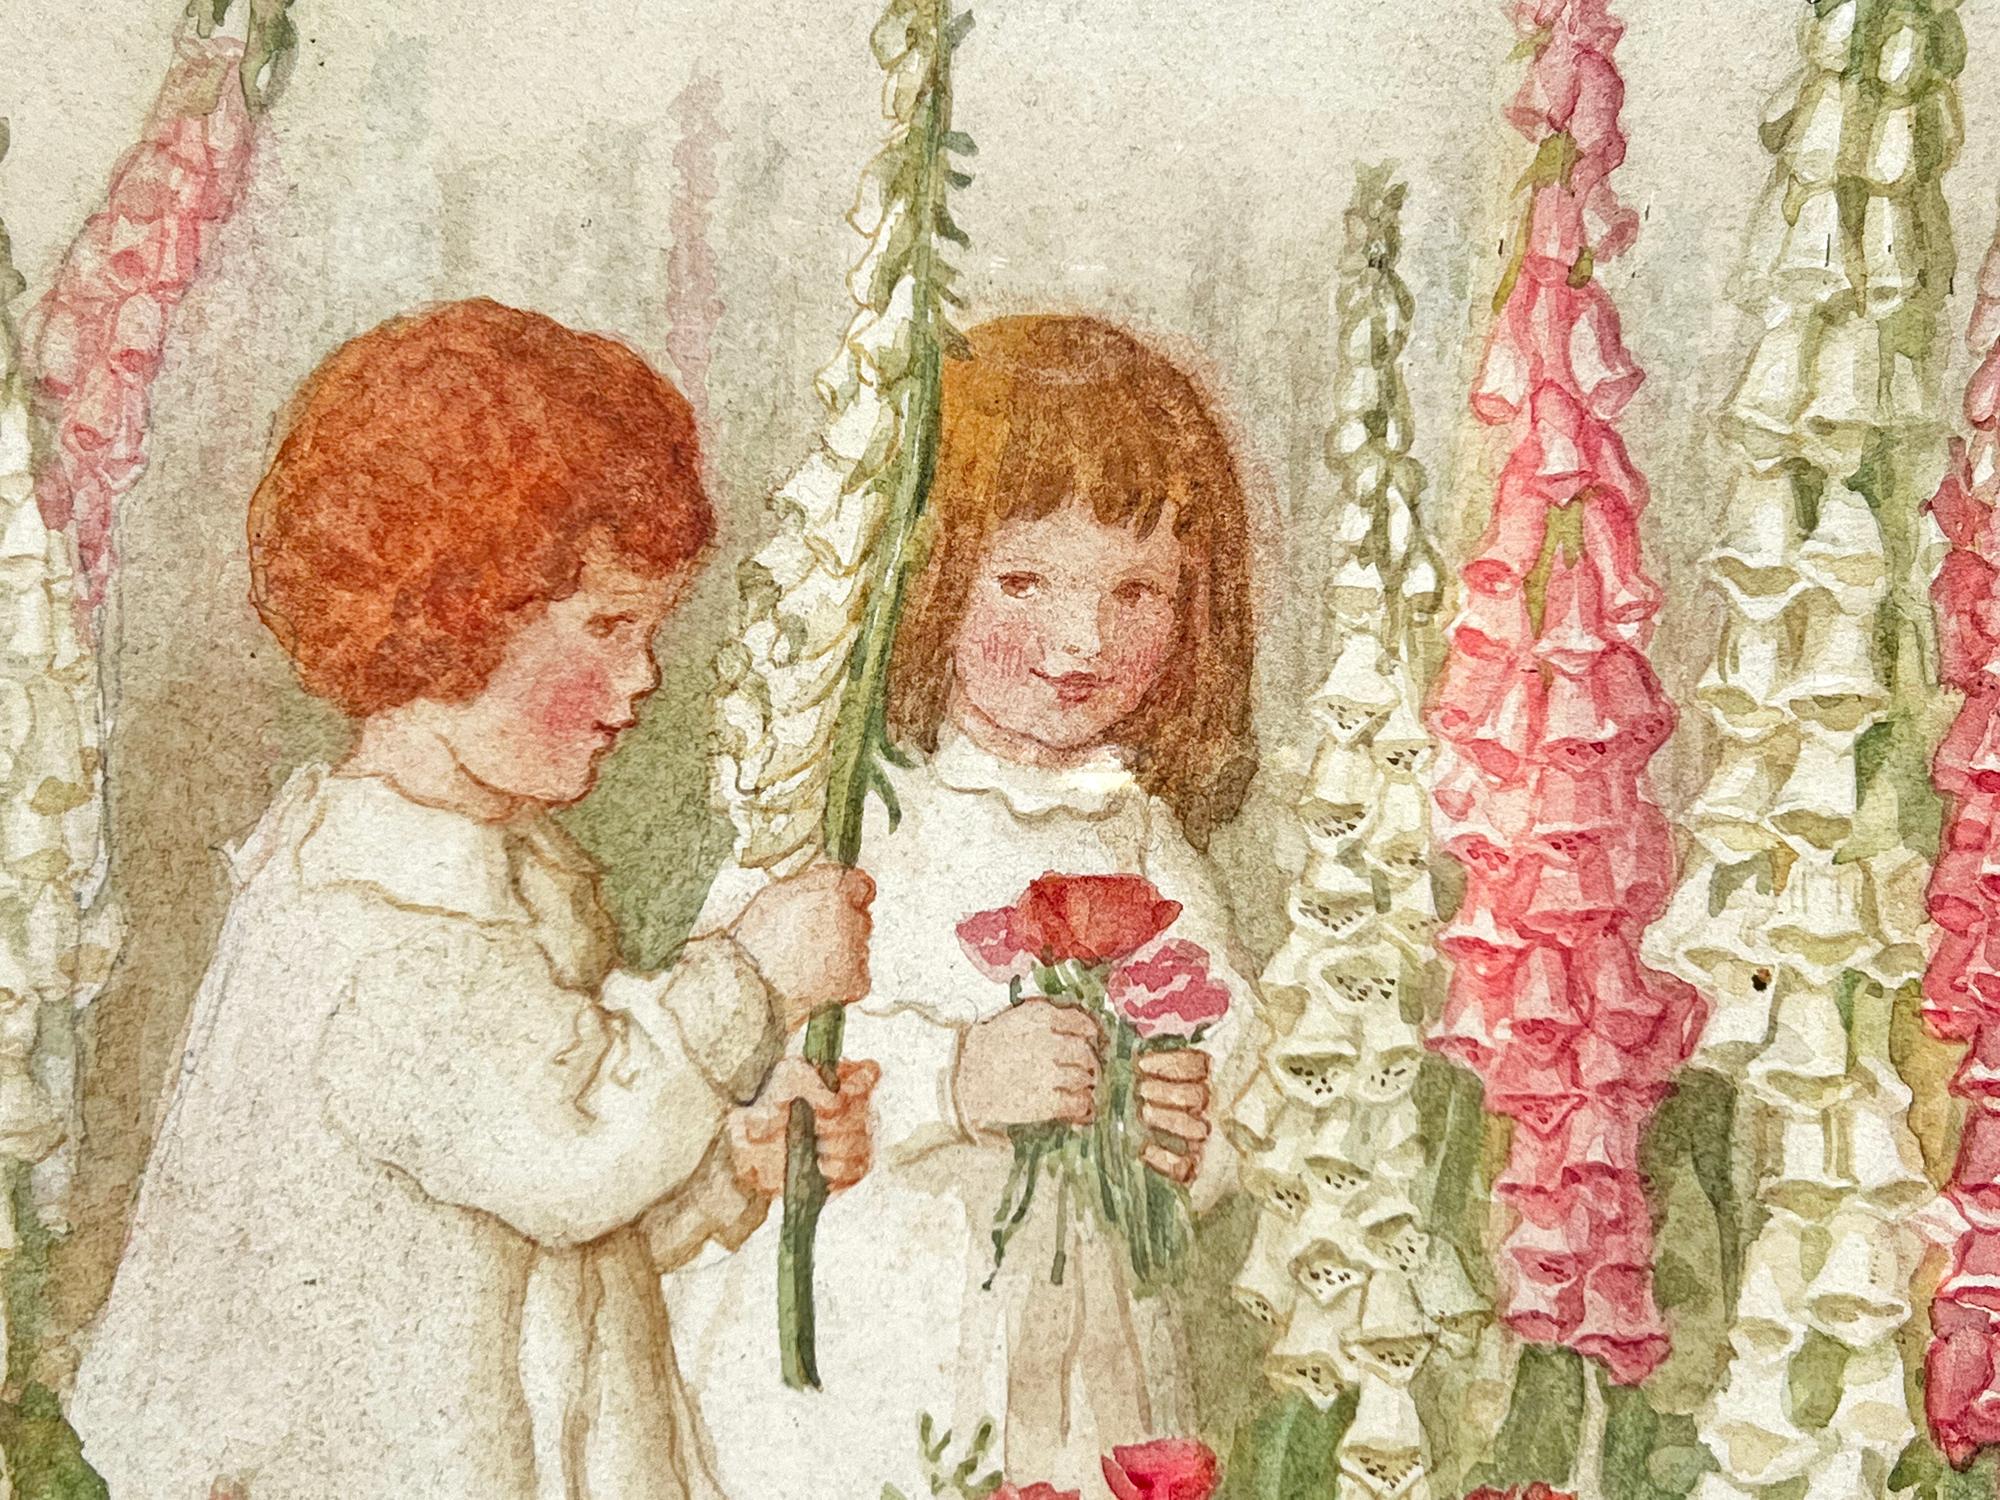 Kinder mit Fuchspelzen - Rosa Blumen, weibliche Illustratorin des Goldenen Zeitalters – Art von Amelia Bauerle  ( Bowerley ) 